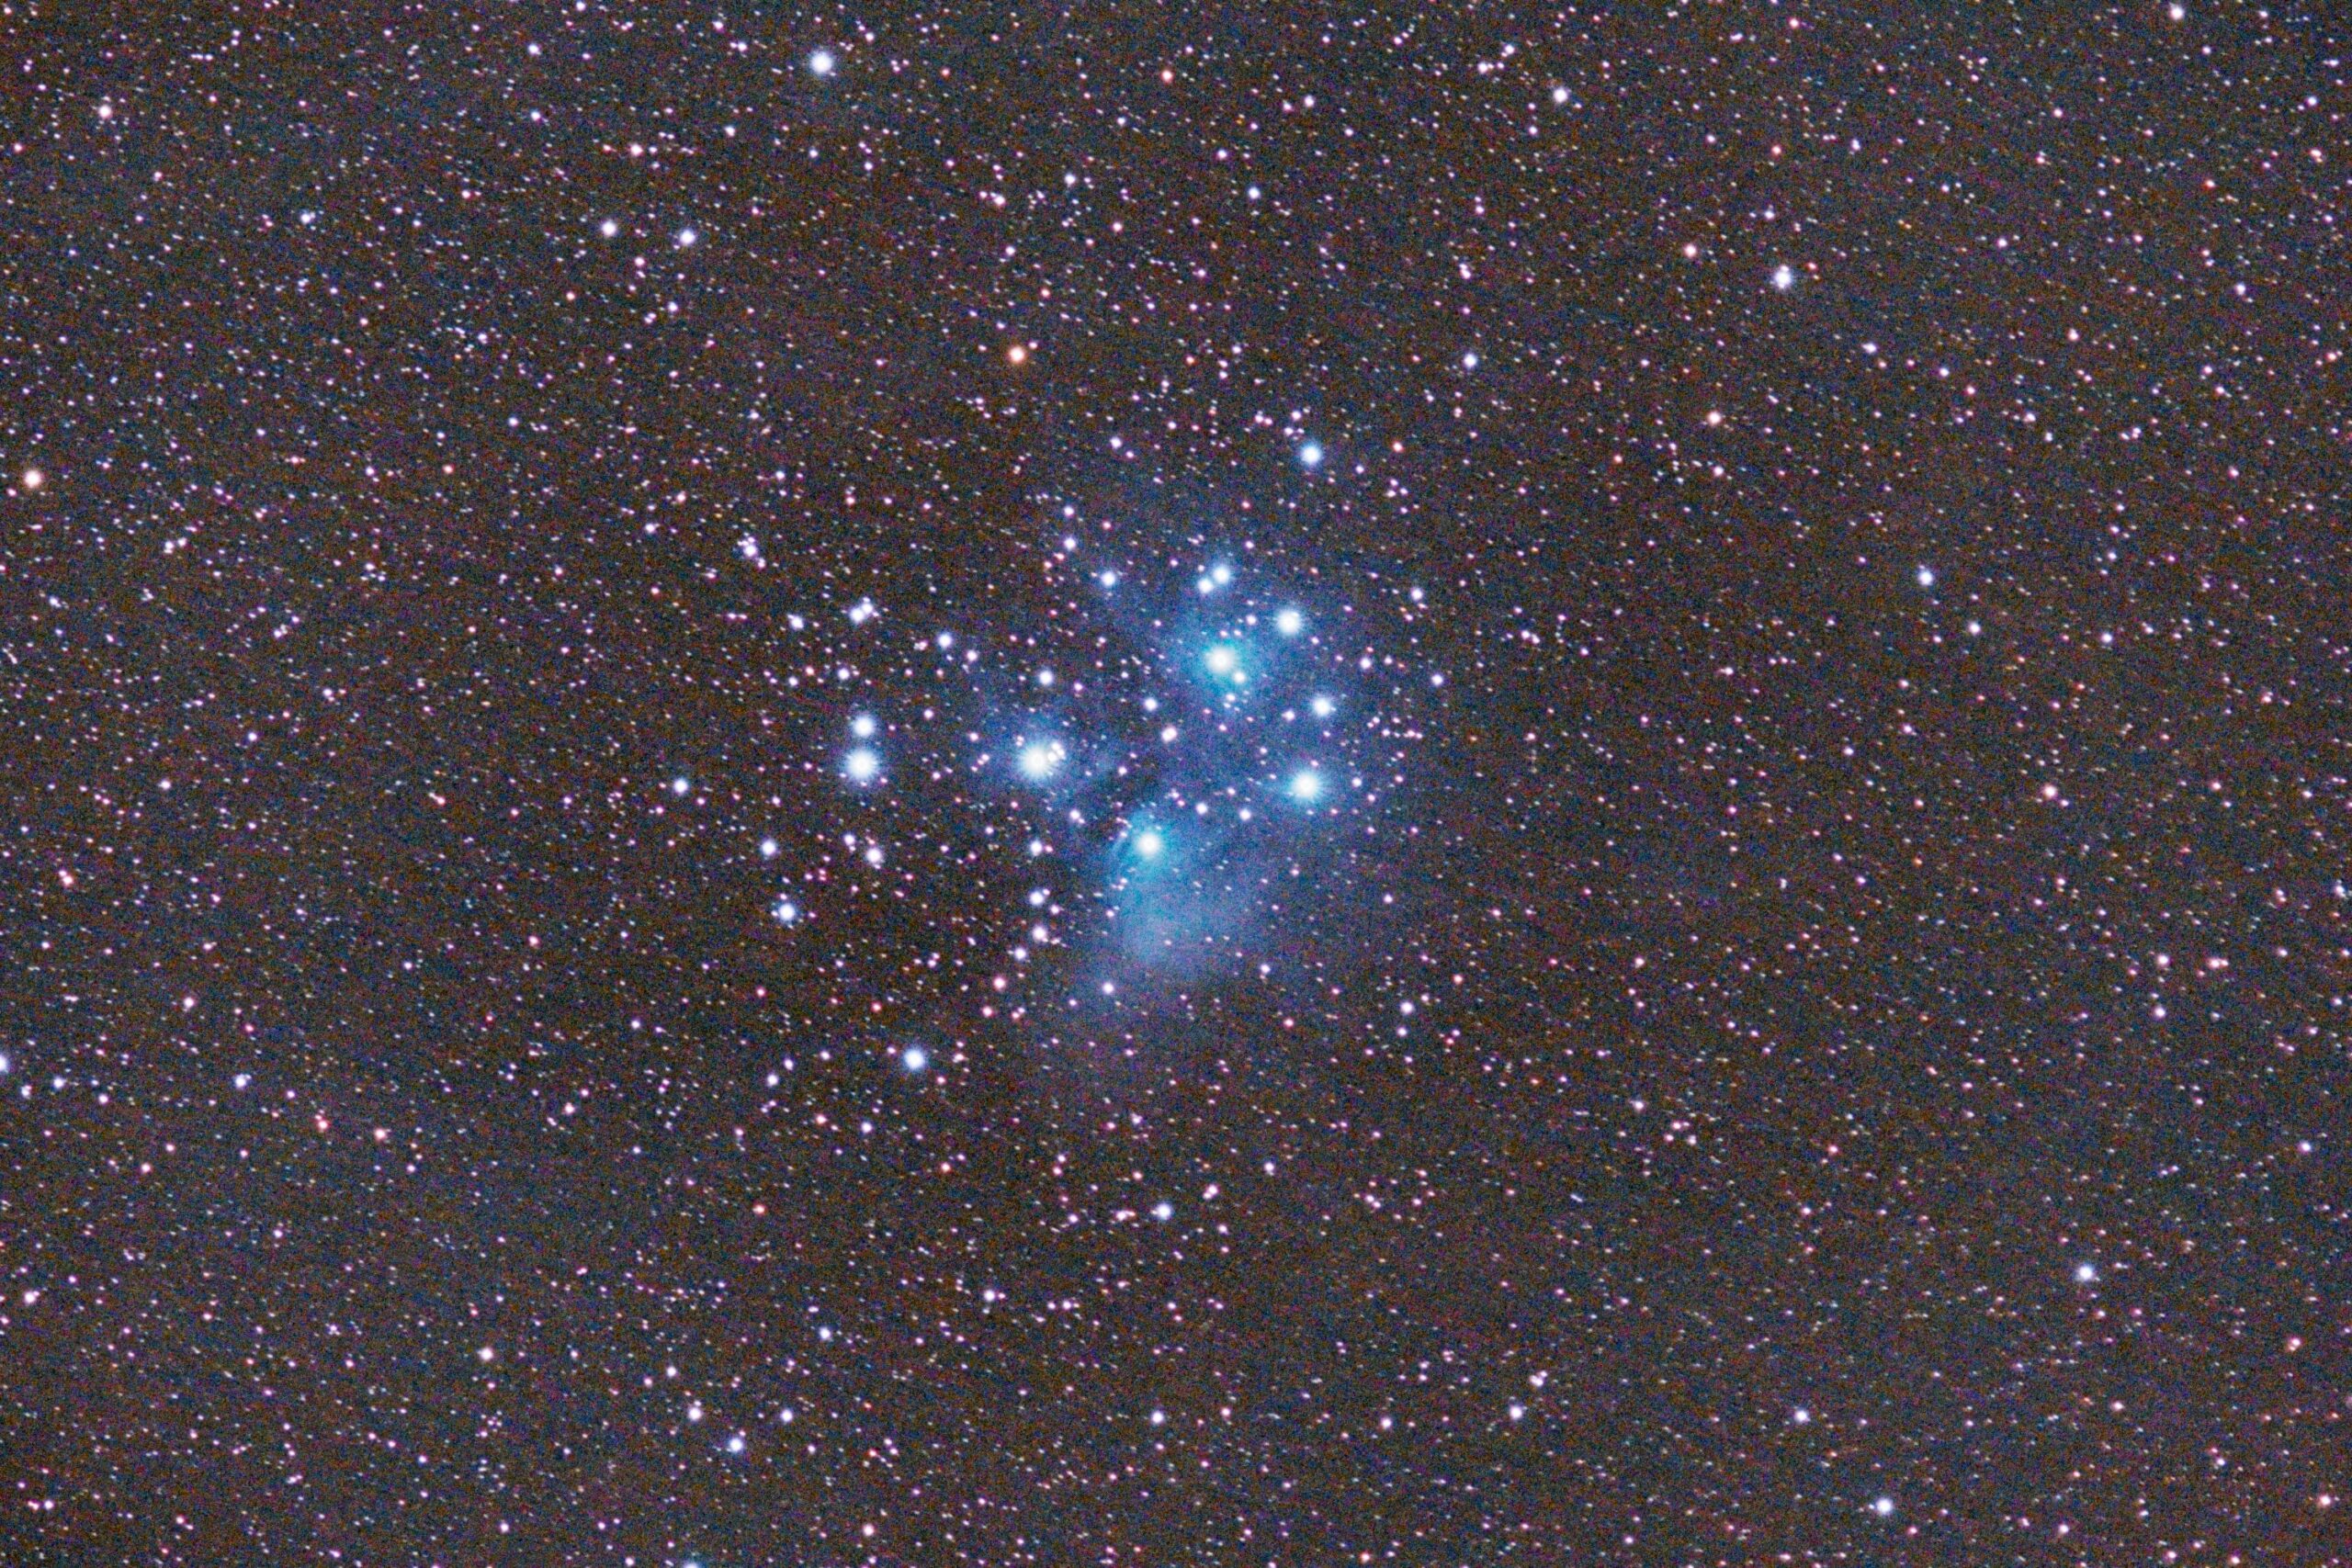 Pleiades (M45)